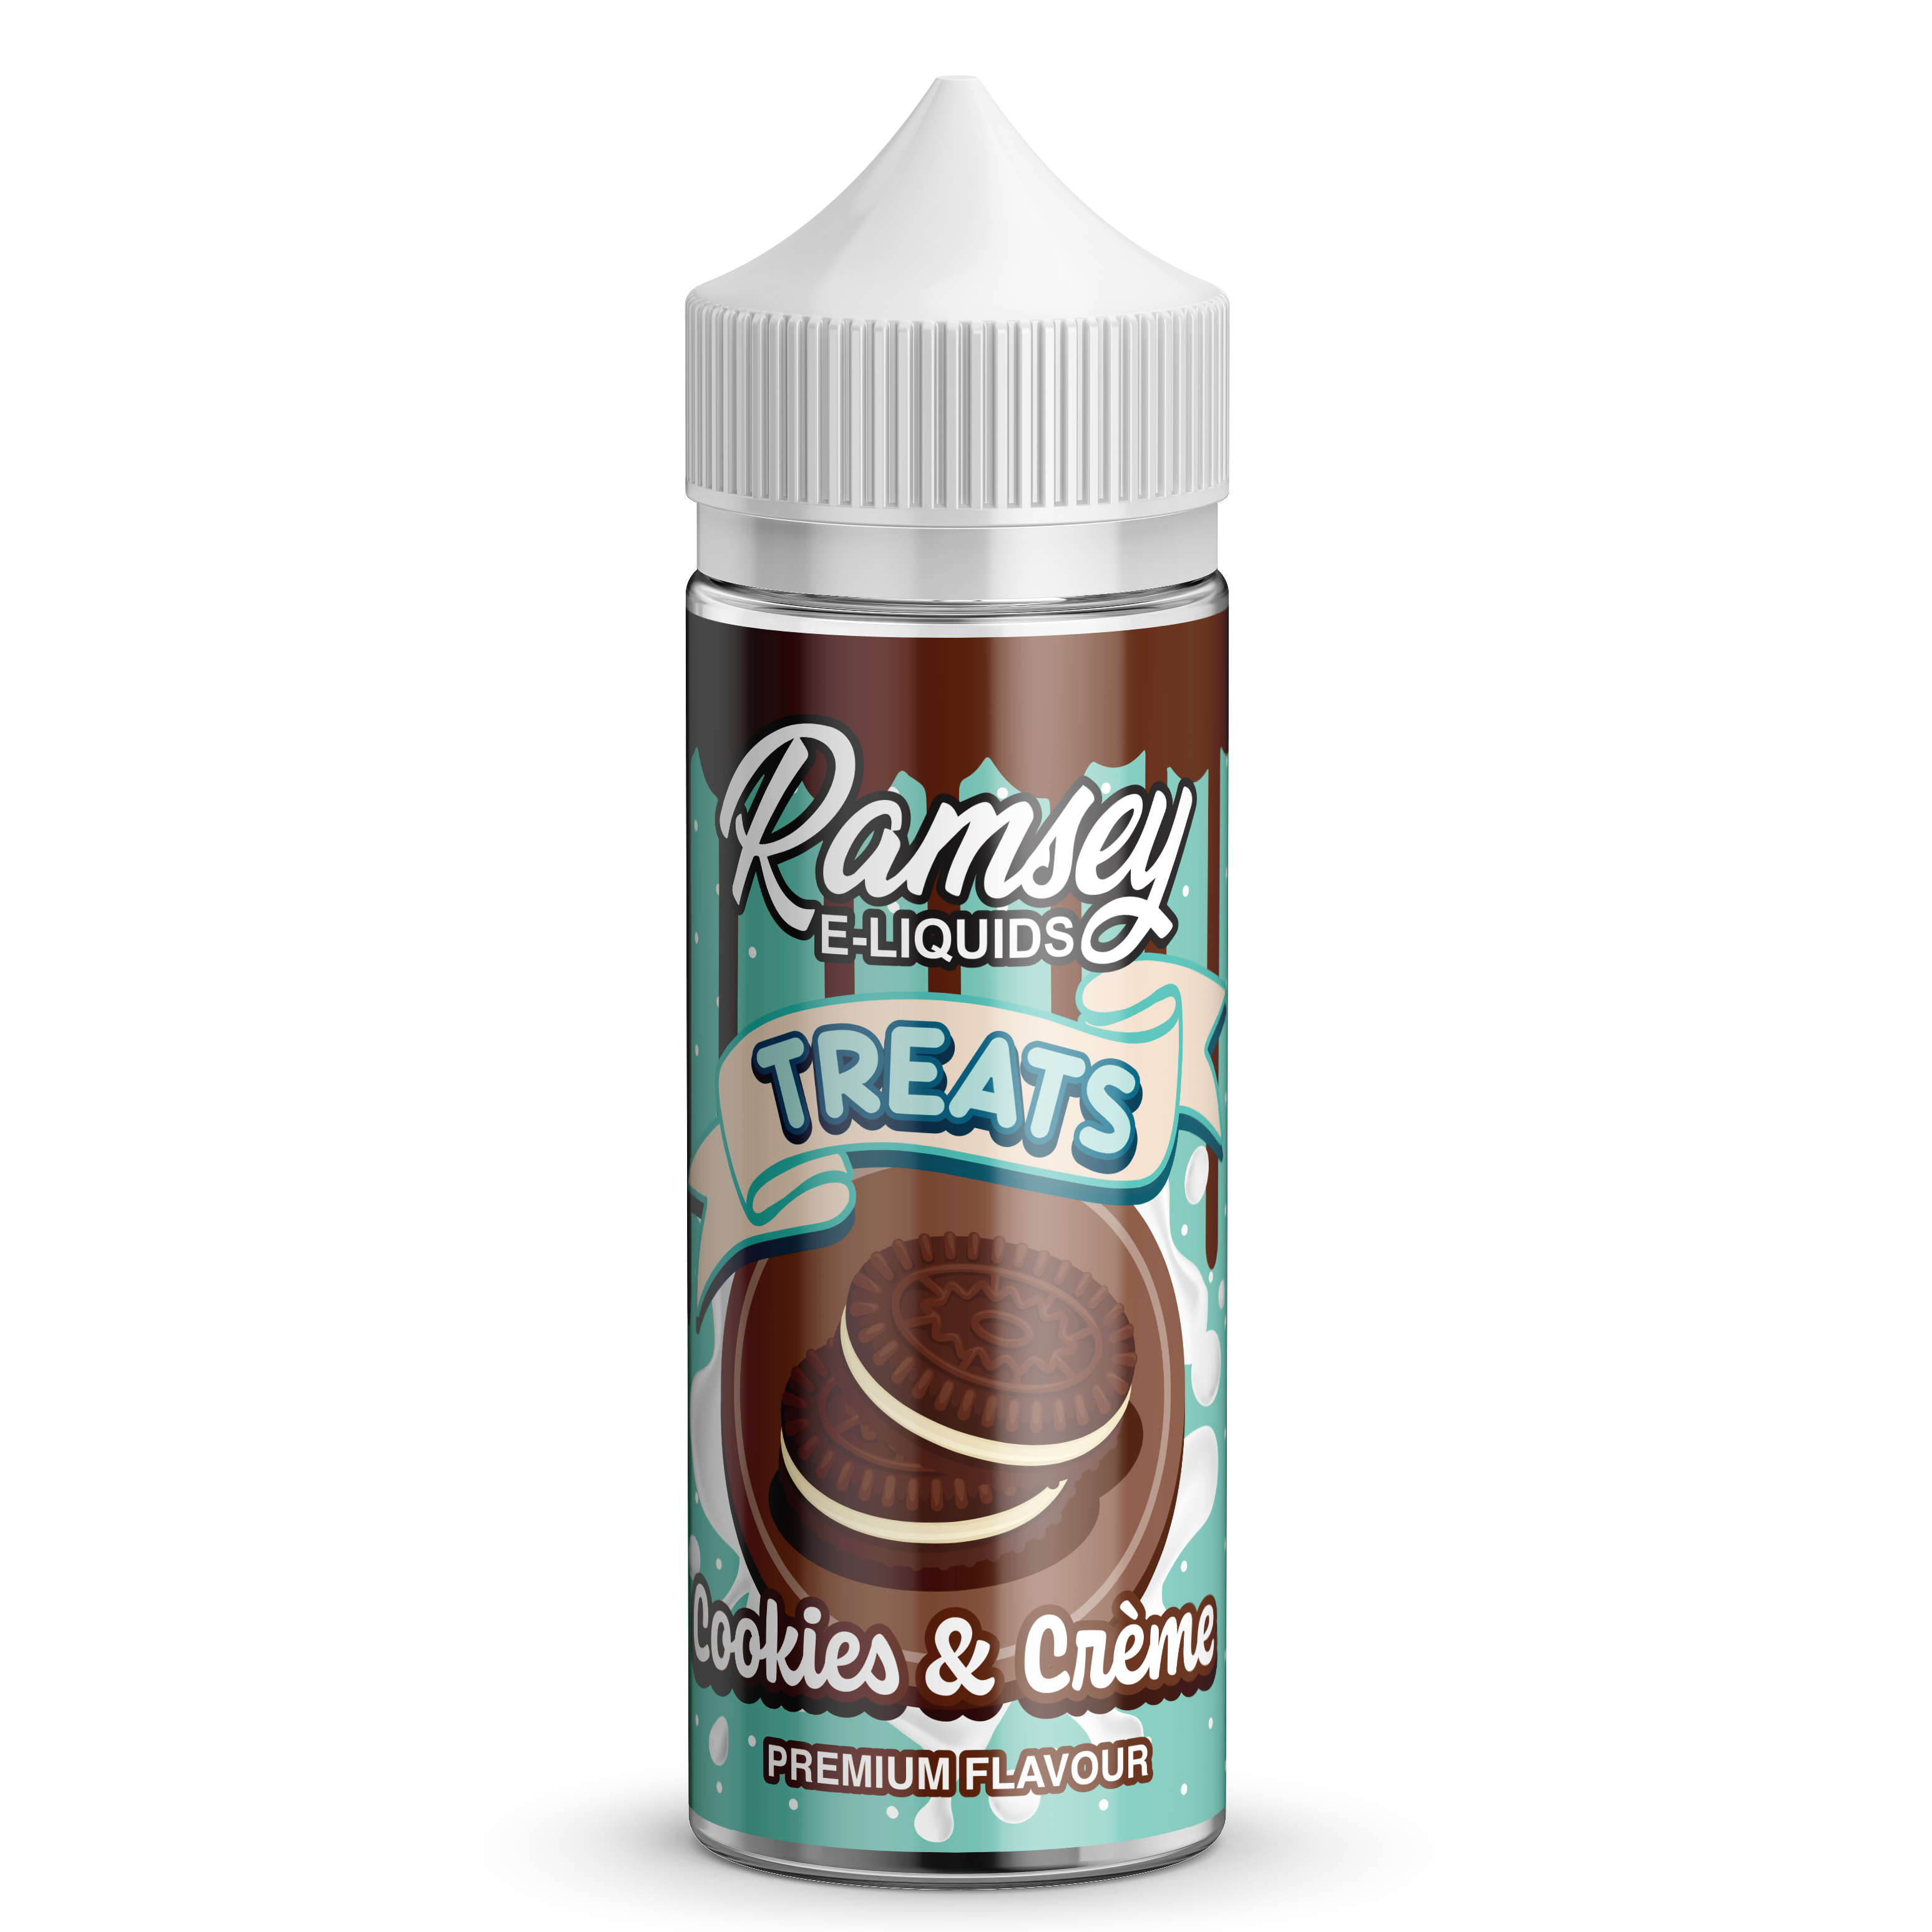 Ramsey E-Liquids Treats Cookies & Cream 0mg 100ml Shortfill E-Liquid